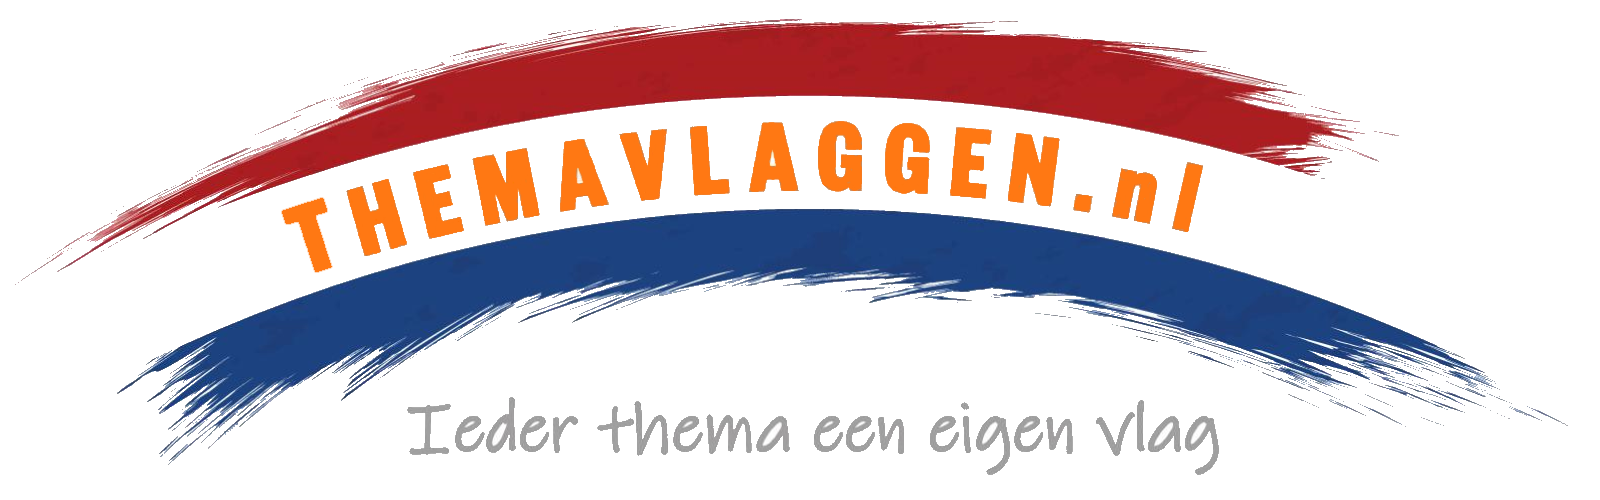 resterend Reorganiseren Seizoen Themavlaggen.nl | voor ieder thema een speciale themavlag!